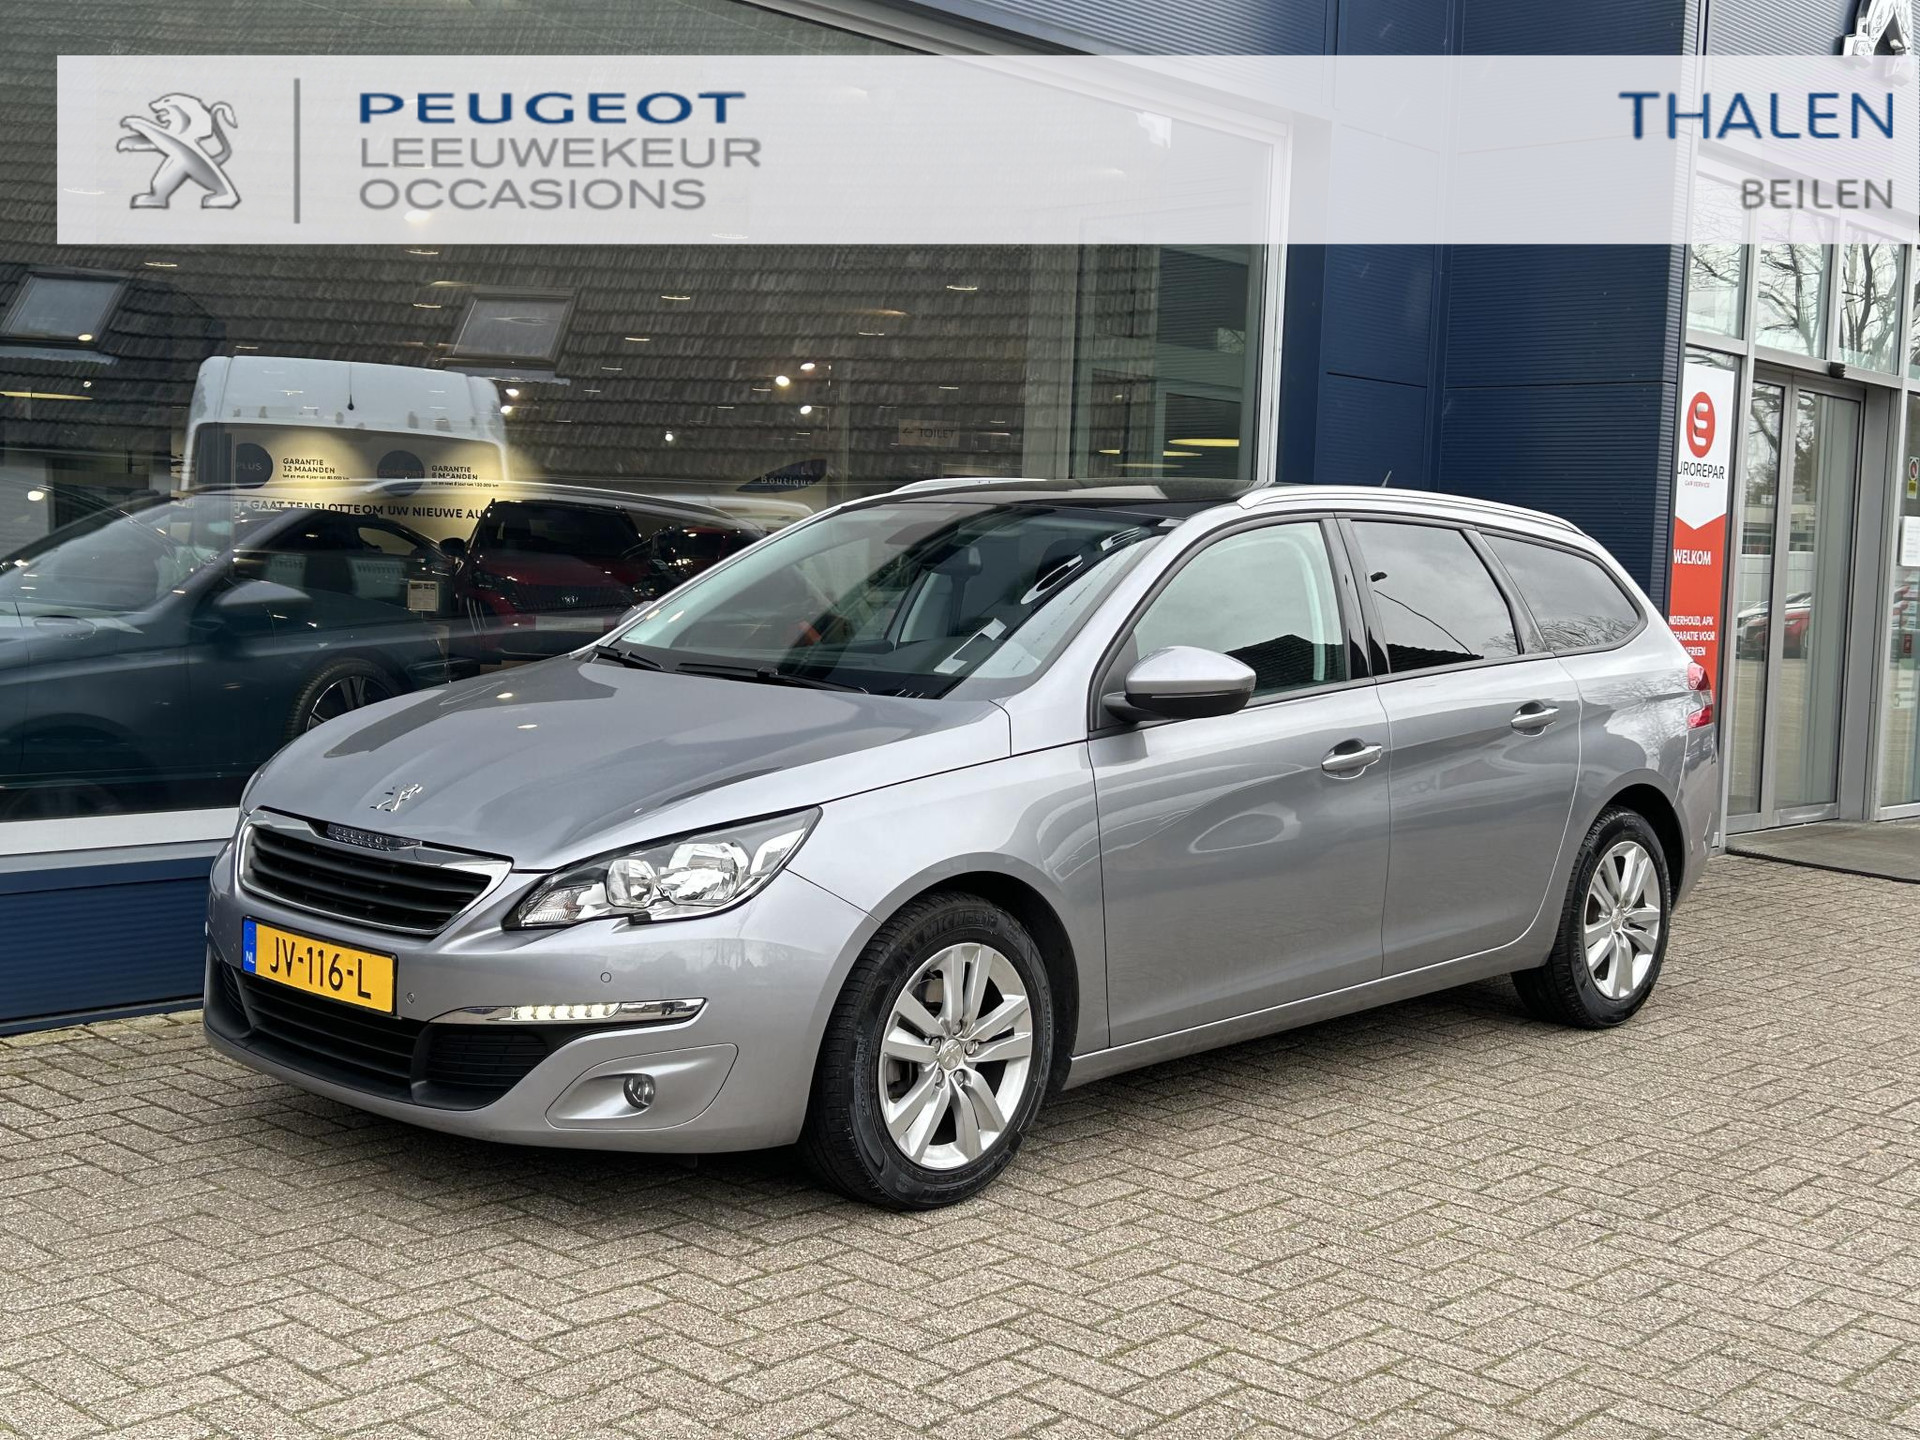 Peugeot 308 SW 1.6 BlueHDI Blue Lease Executive | Navigatie | Panorama dak | Zeer nette staat | Trekhaak | Cruise control | Lichtmetalen velgen | Parkeersensoren. bij viaBOVAG.nl